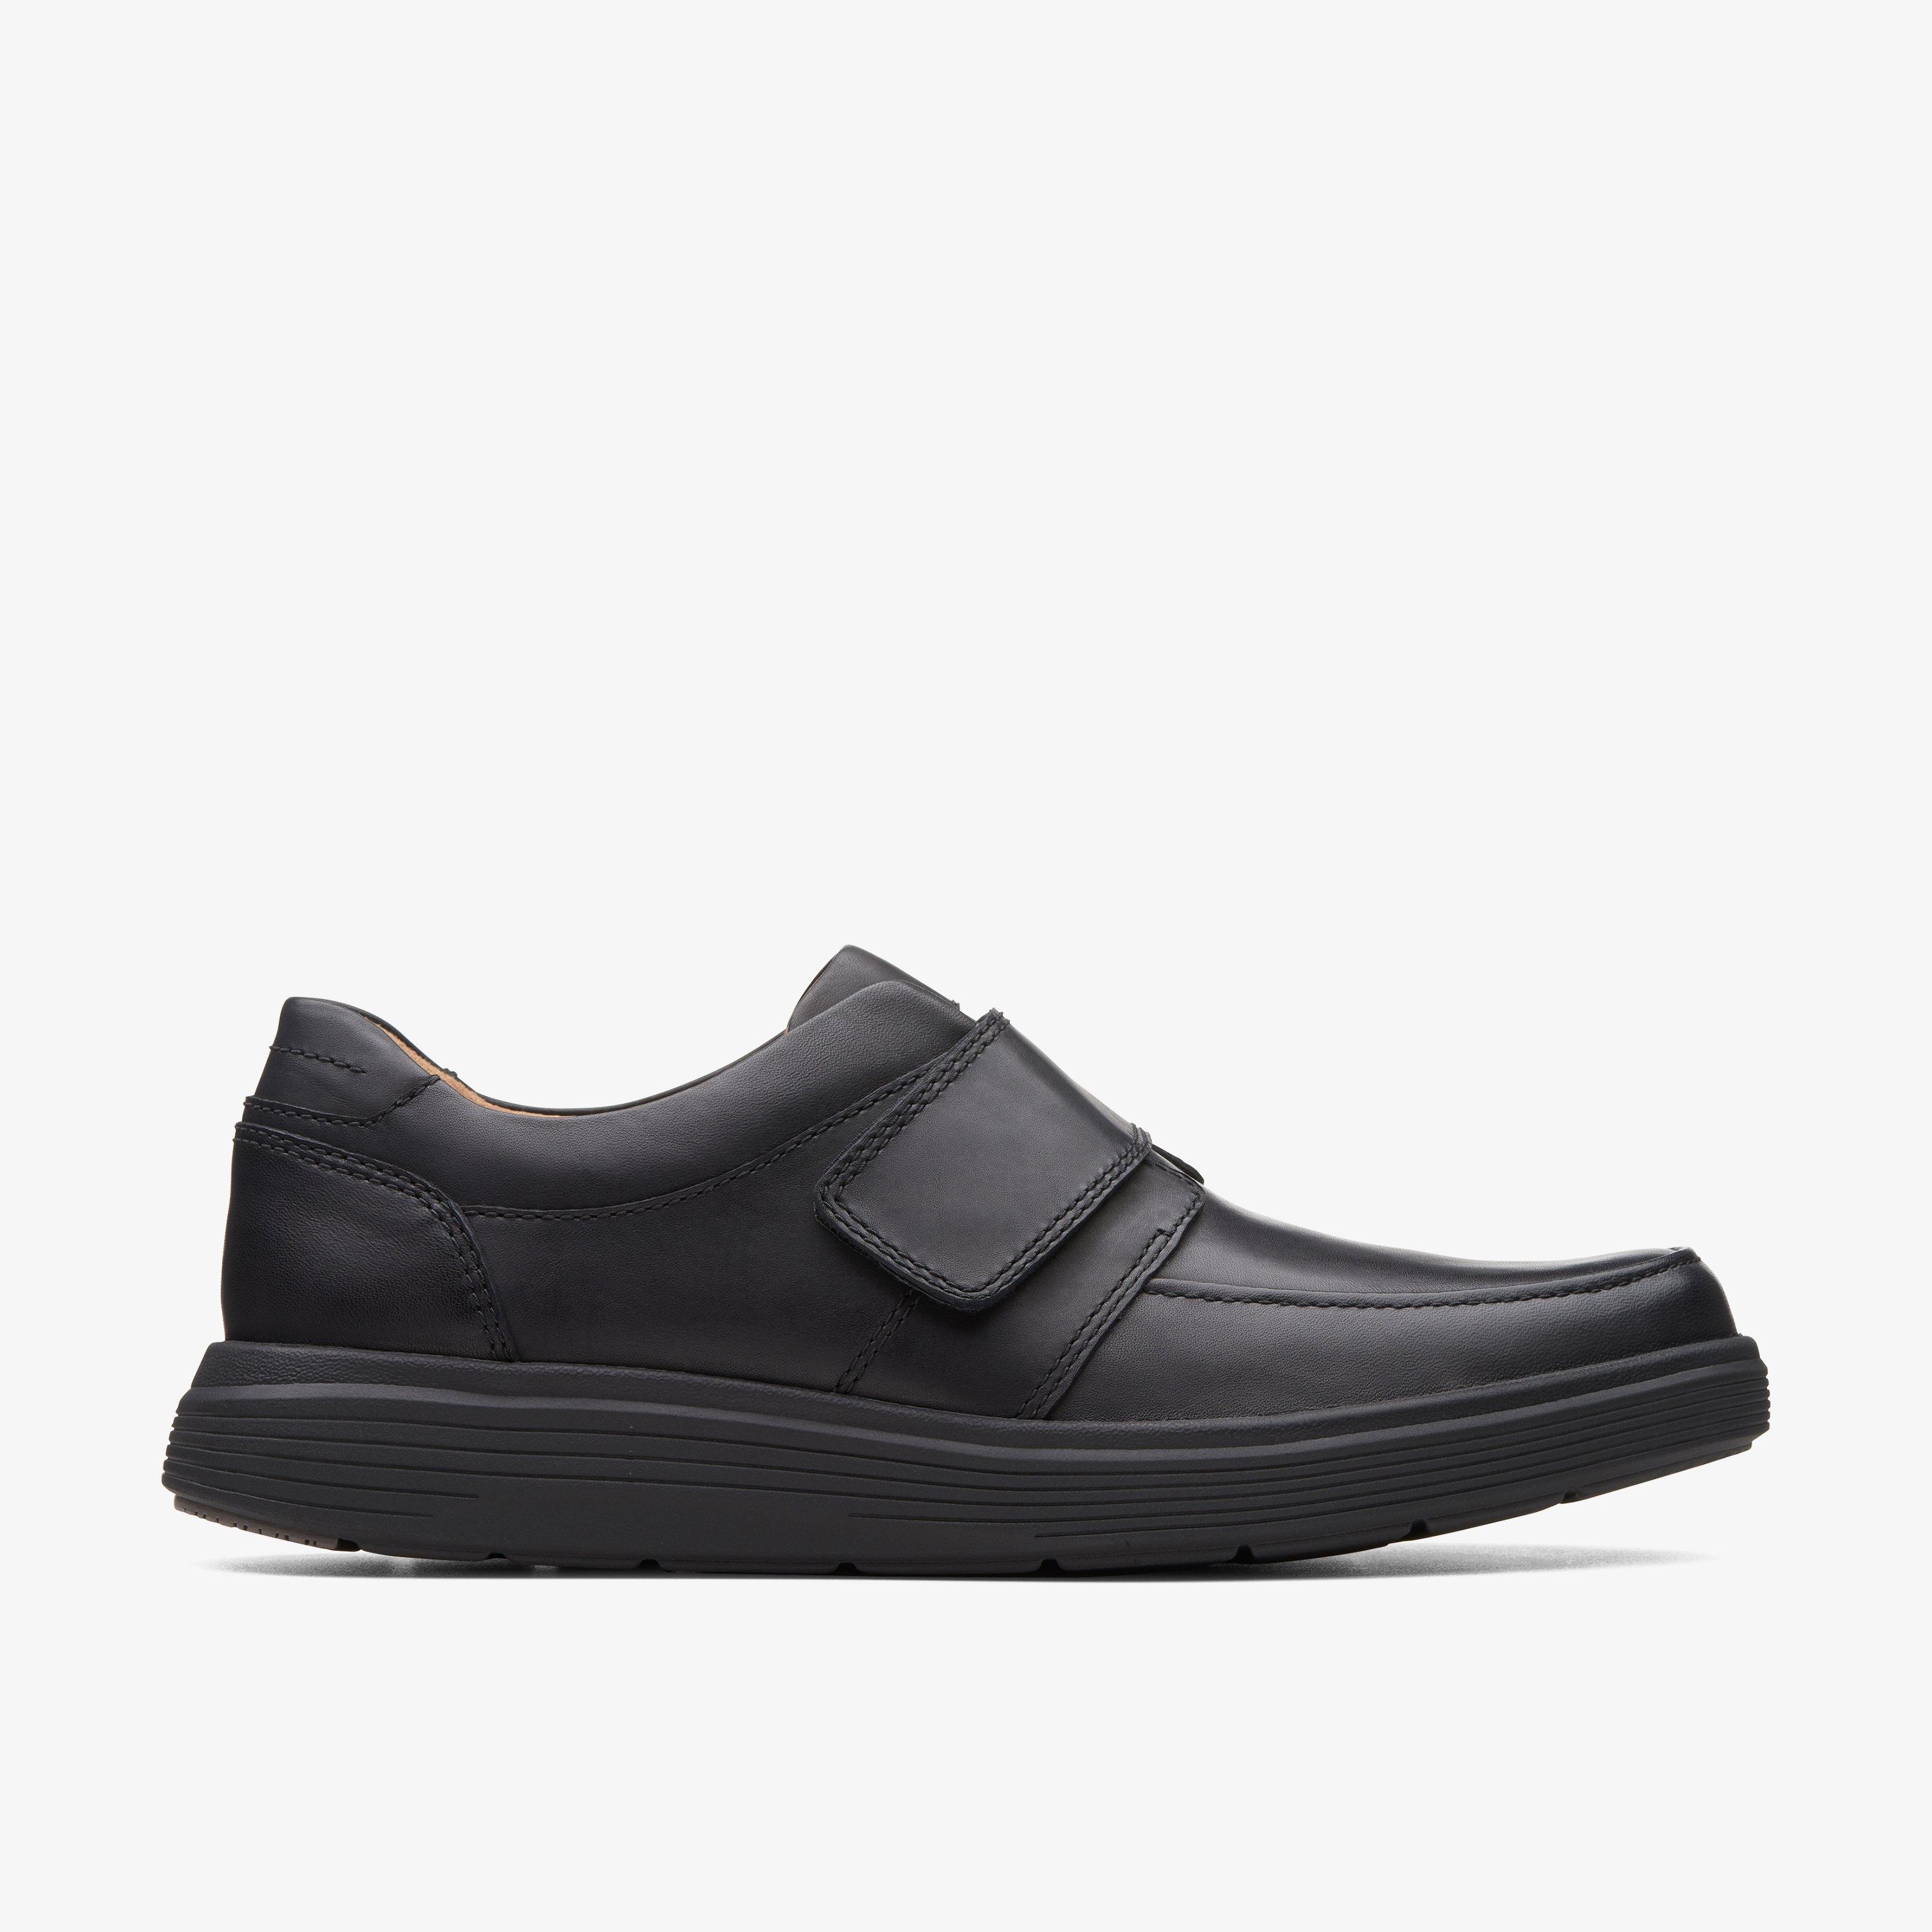 Size 13 Clarks Un Abode Strap Black Leather shoes